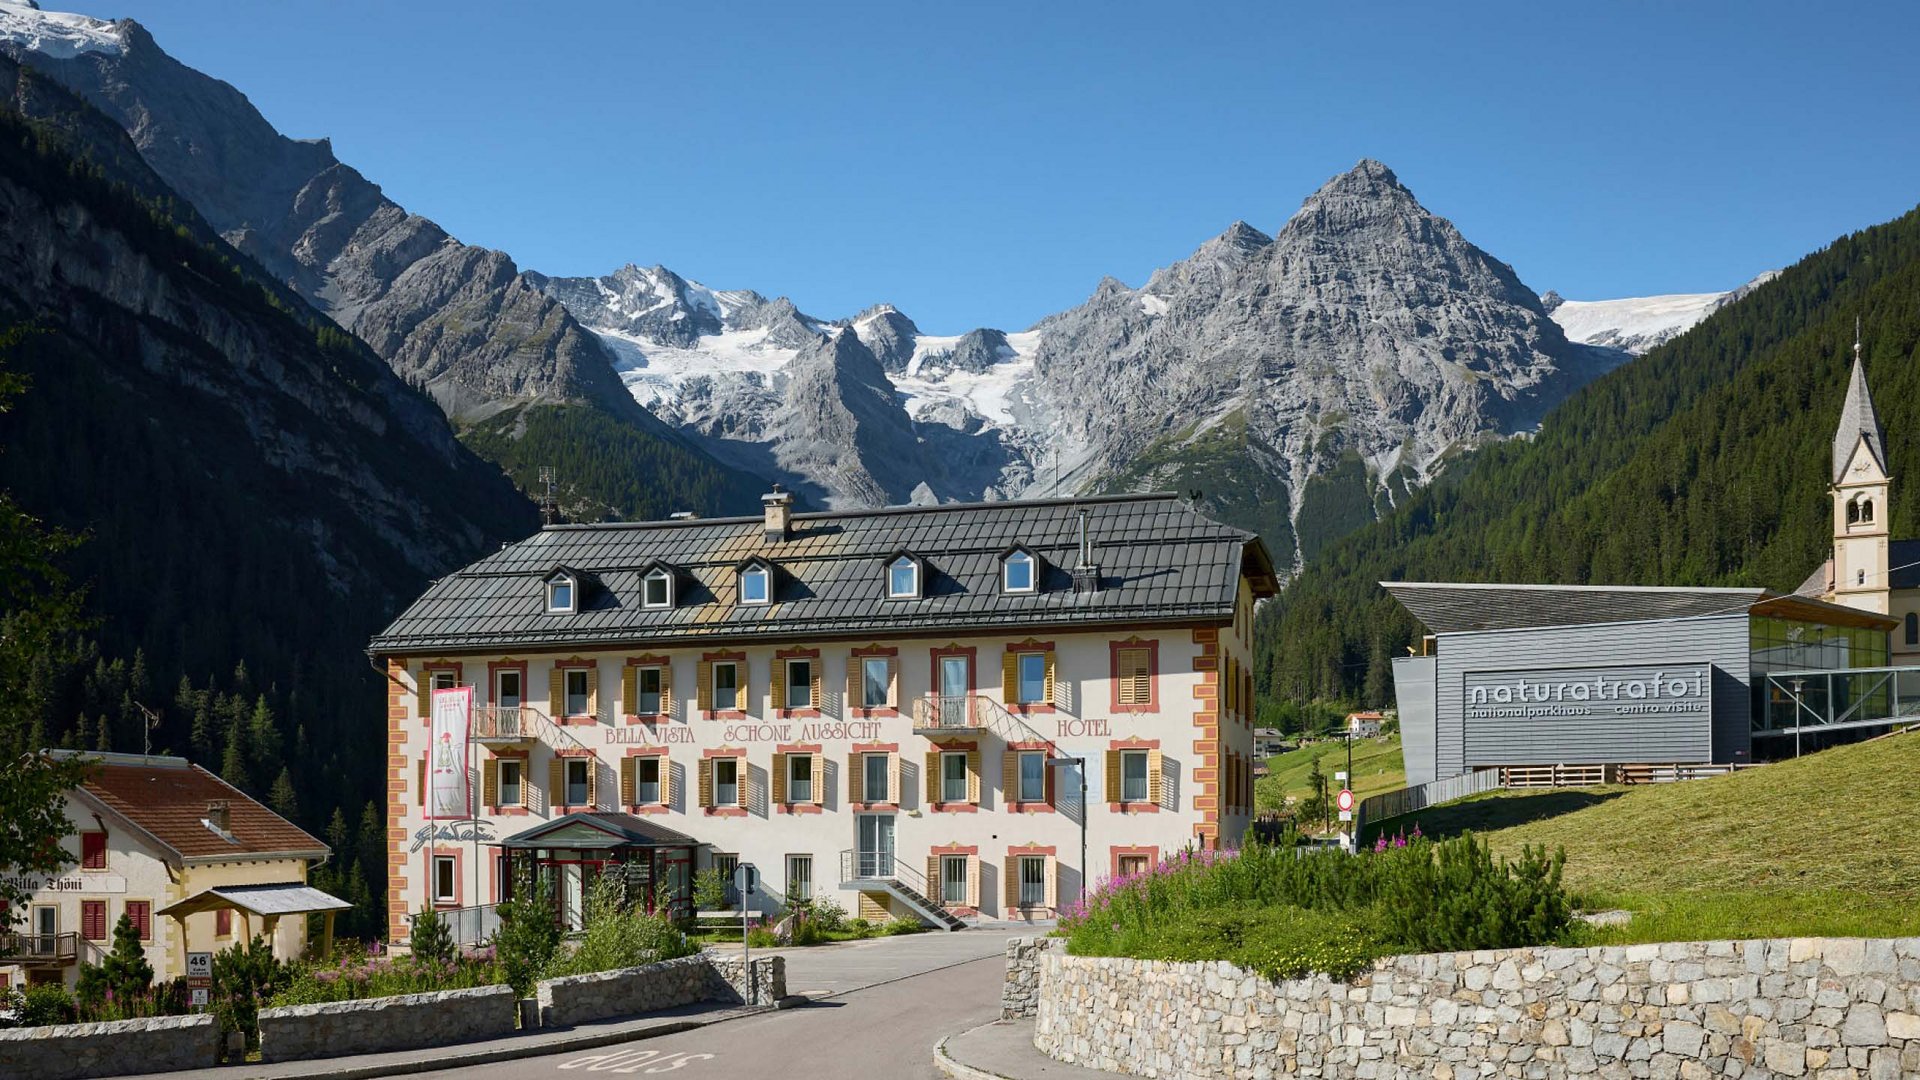 L'Hotel Bella Vista si erge fiero davanti all'imponente sfondo delle Alpi Altoatesine innevate, un invito al lusso e al relax nella natura.